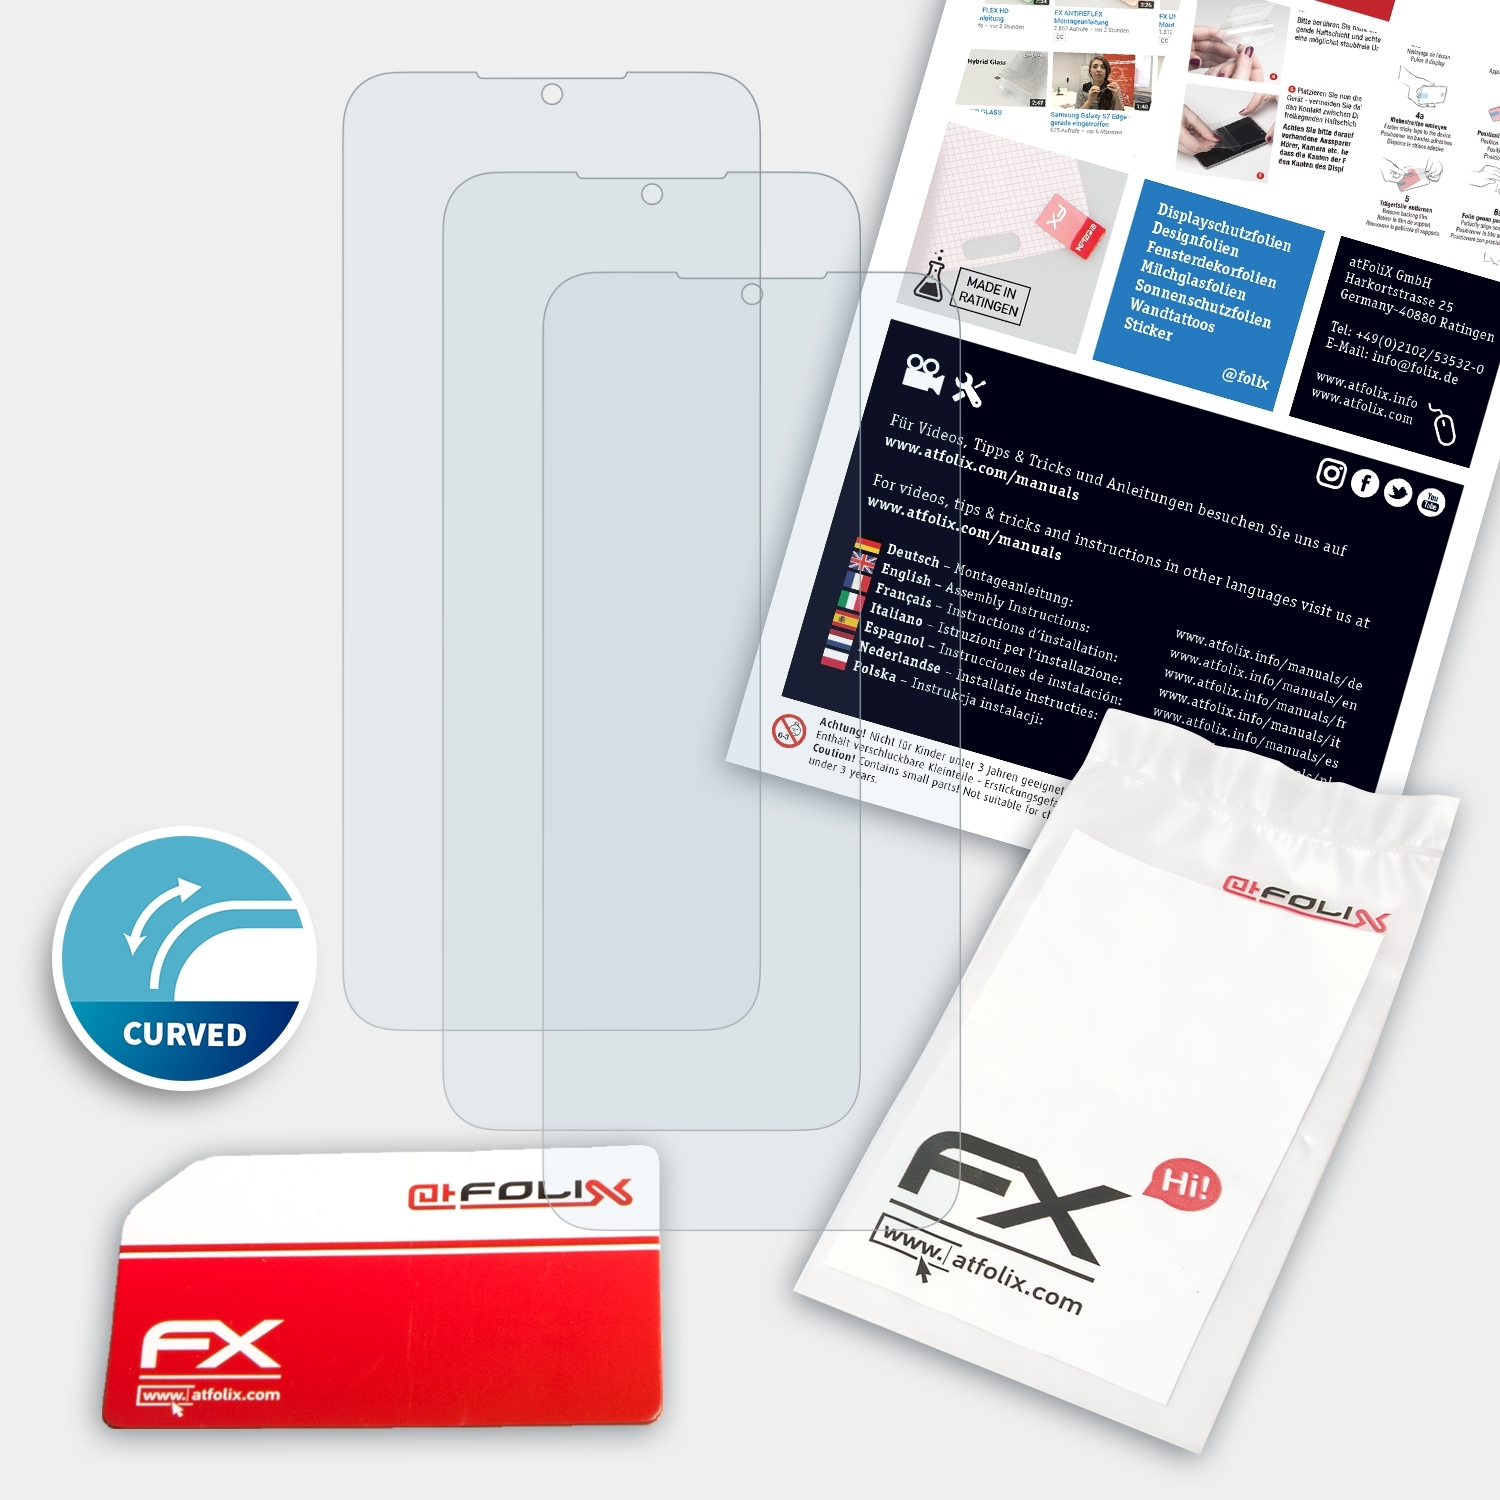 ATFOLIX 3x Nokia Displayschutz(für G50) FX-ActiFleX